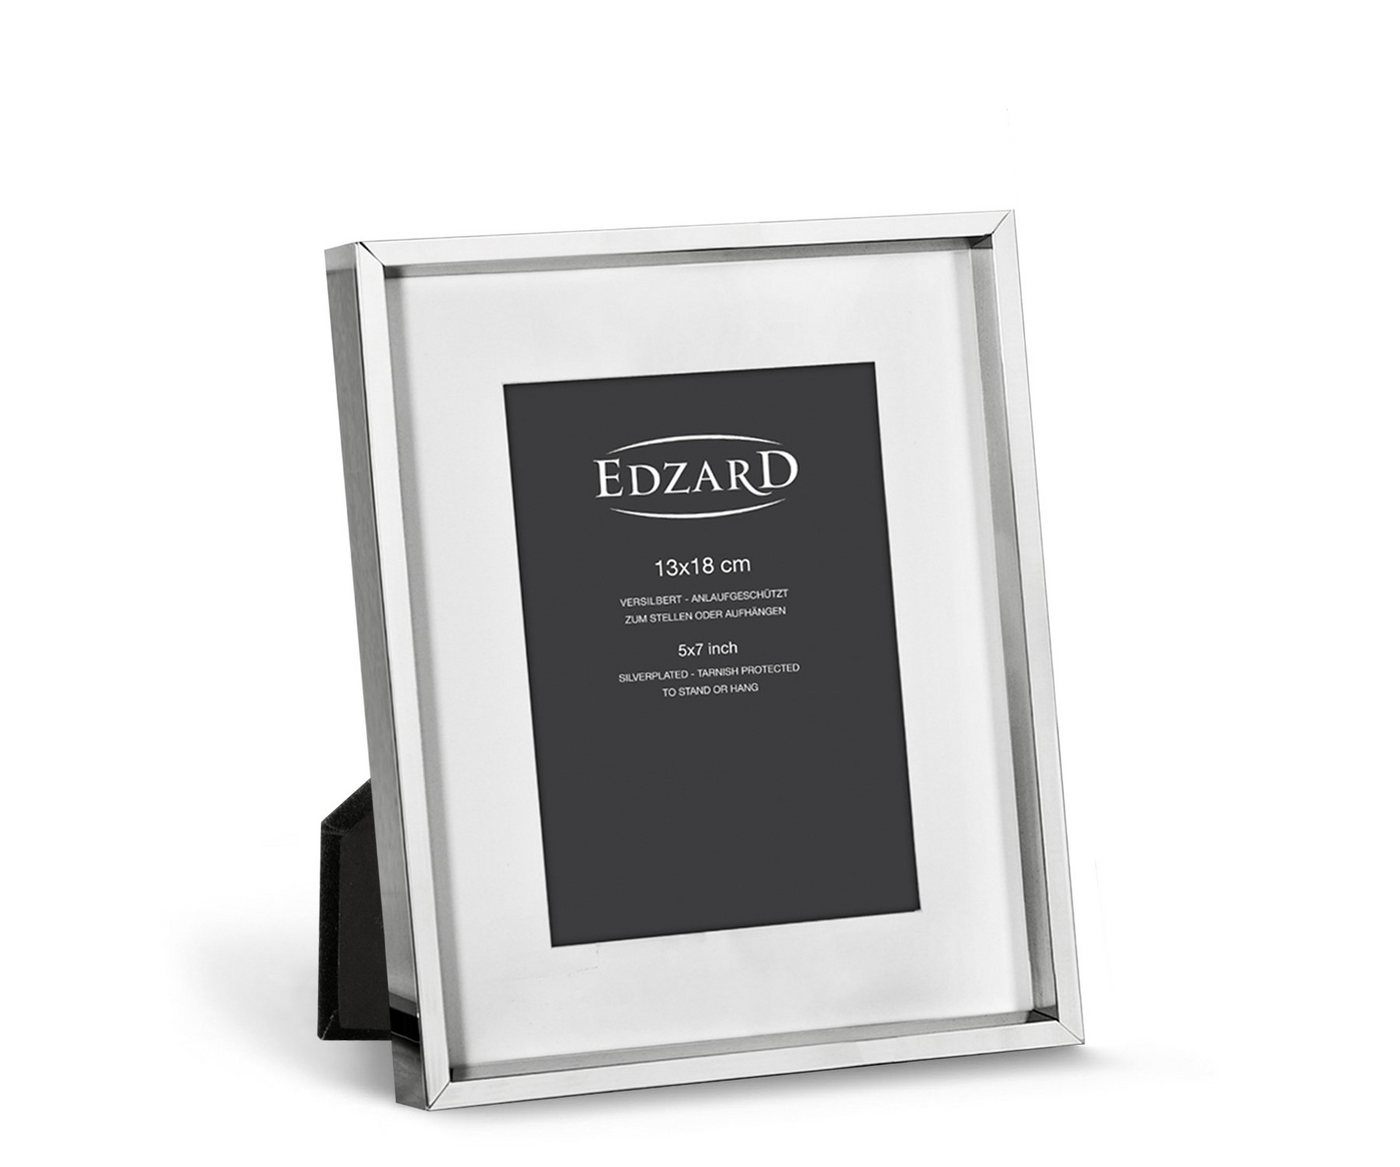 EDZARD Bilderrahmen Perugia, versilbert und anlaufgeschützt, für 13x18 cm Foto von EDZARD